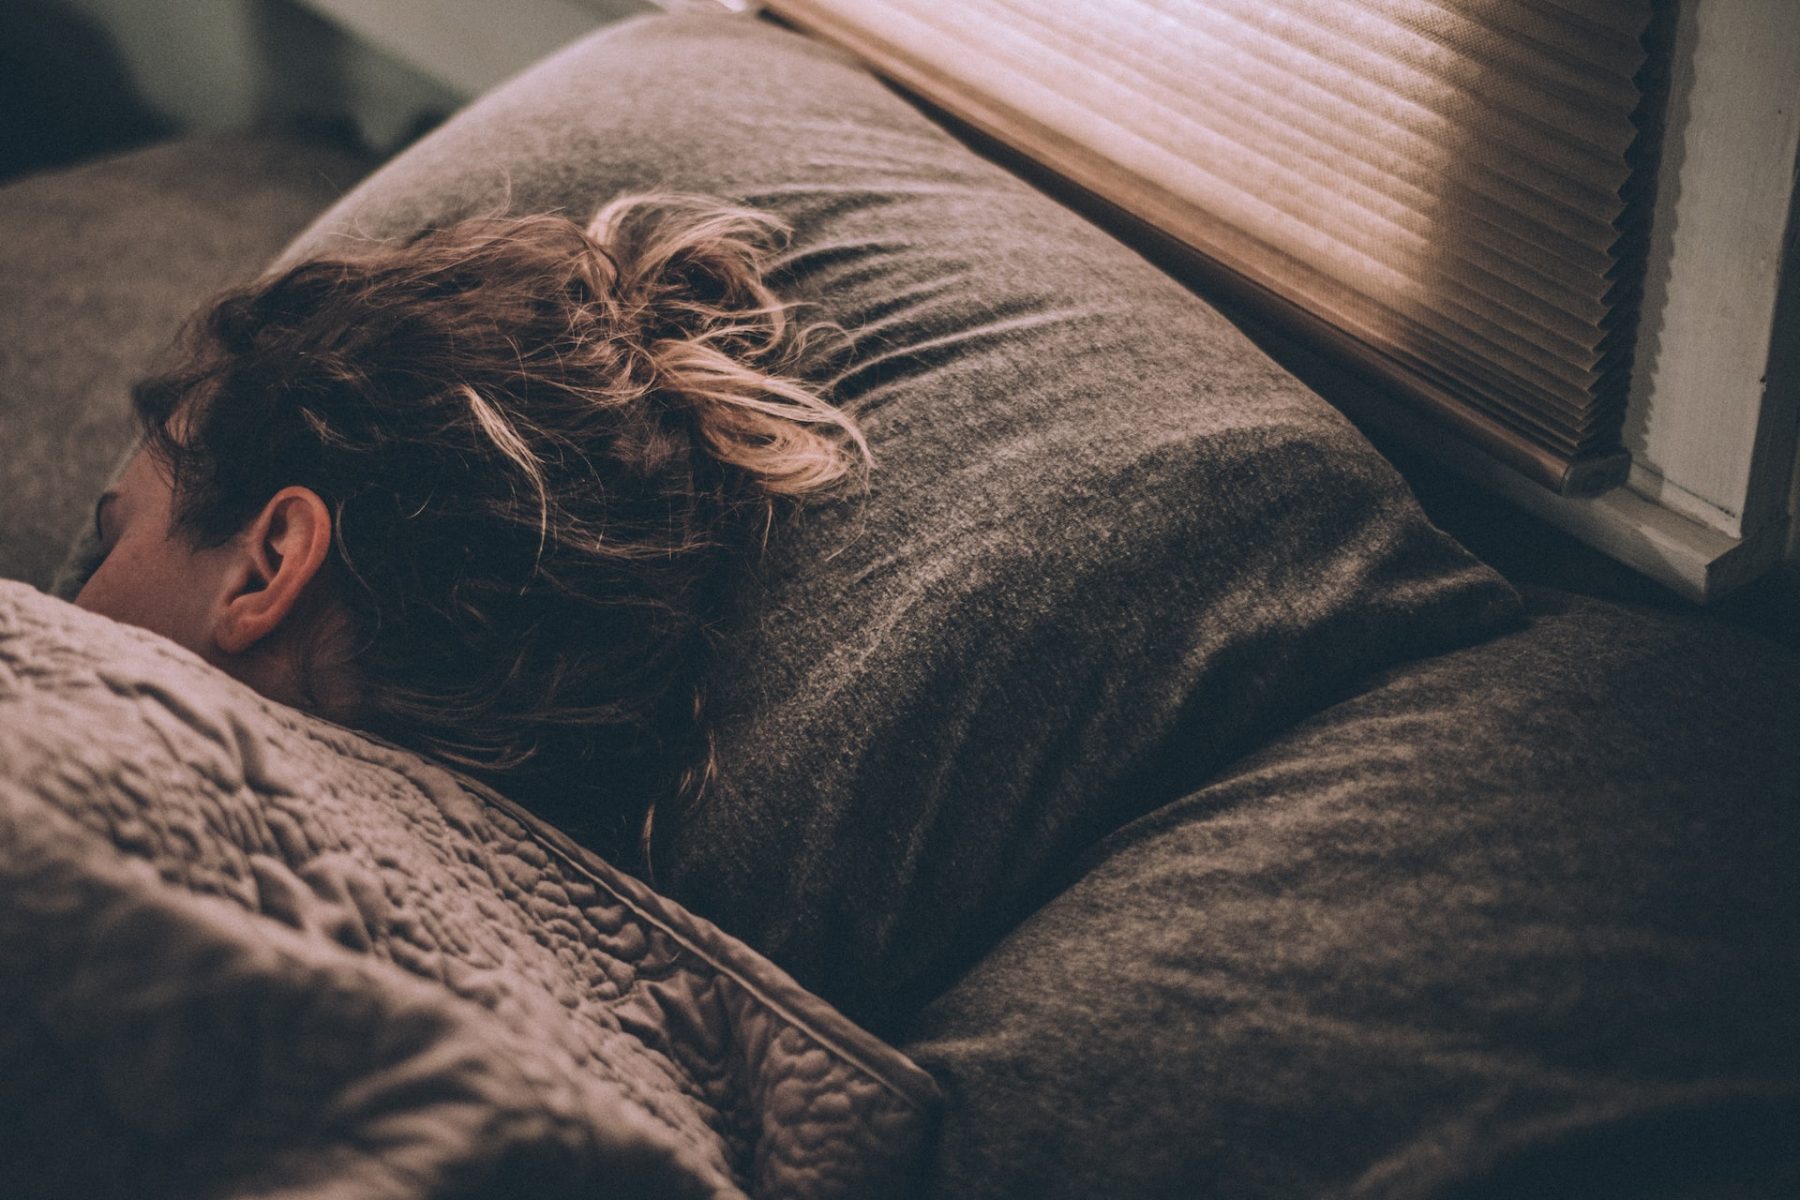 Ύπνος: Πώς να κοιμάστε καλύτερα το βράδυ για να είστε ξεκούραστοι την επόμενη μέρα